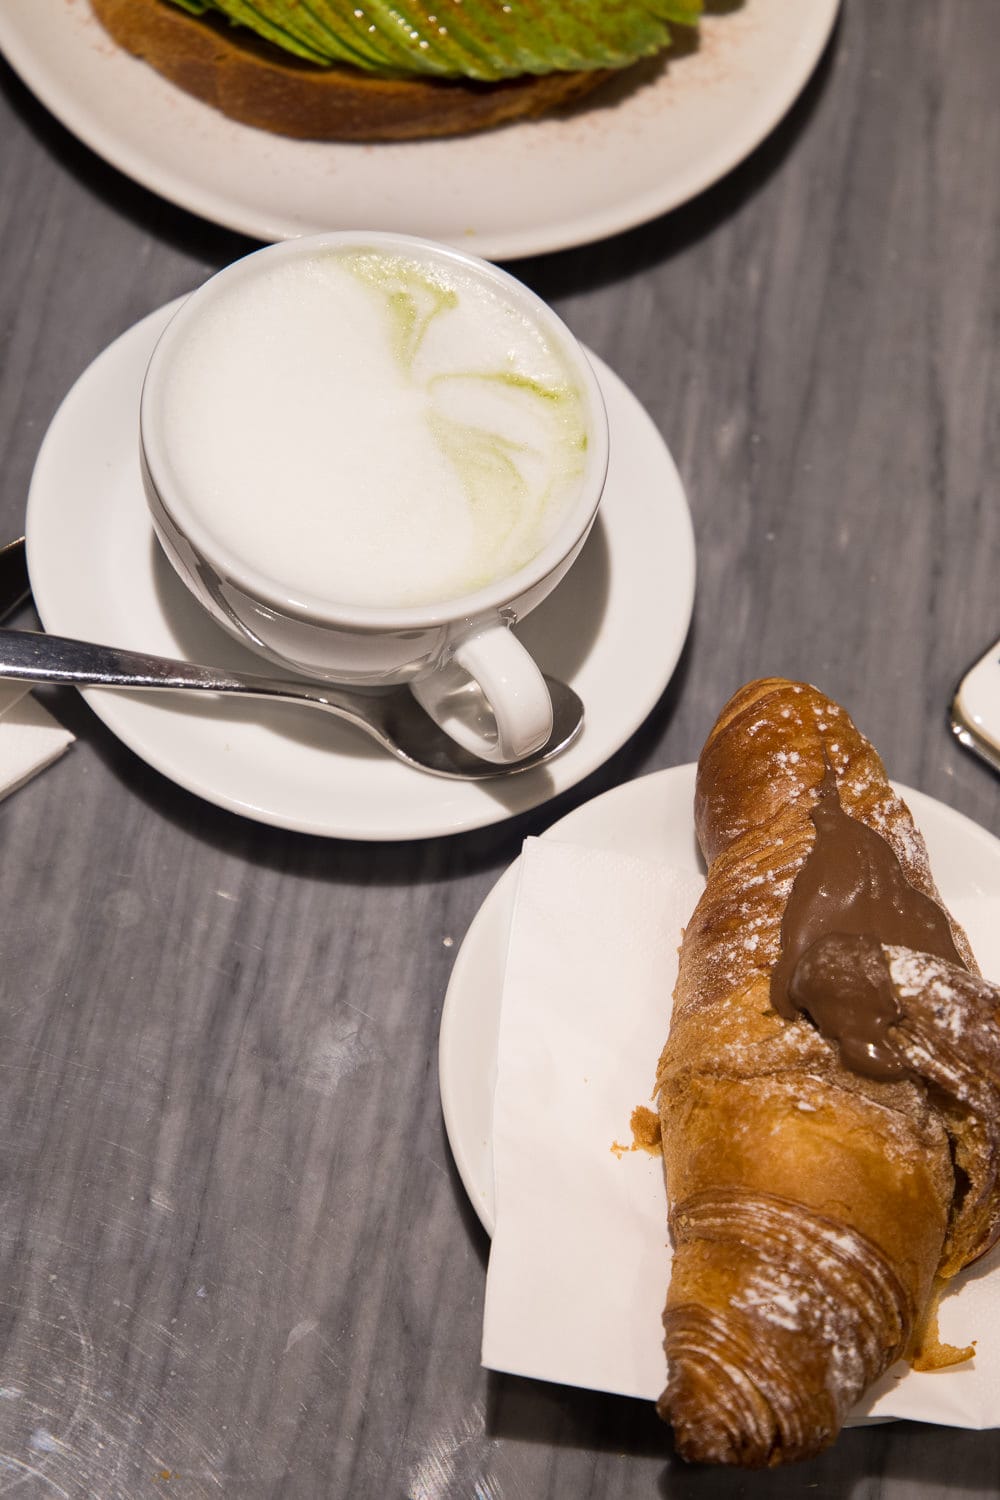 Foodguide Milano - Diese Restaurants & Cafés darfst du nicht verpassen!